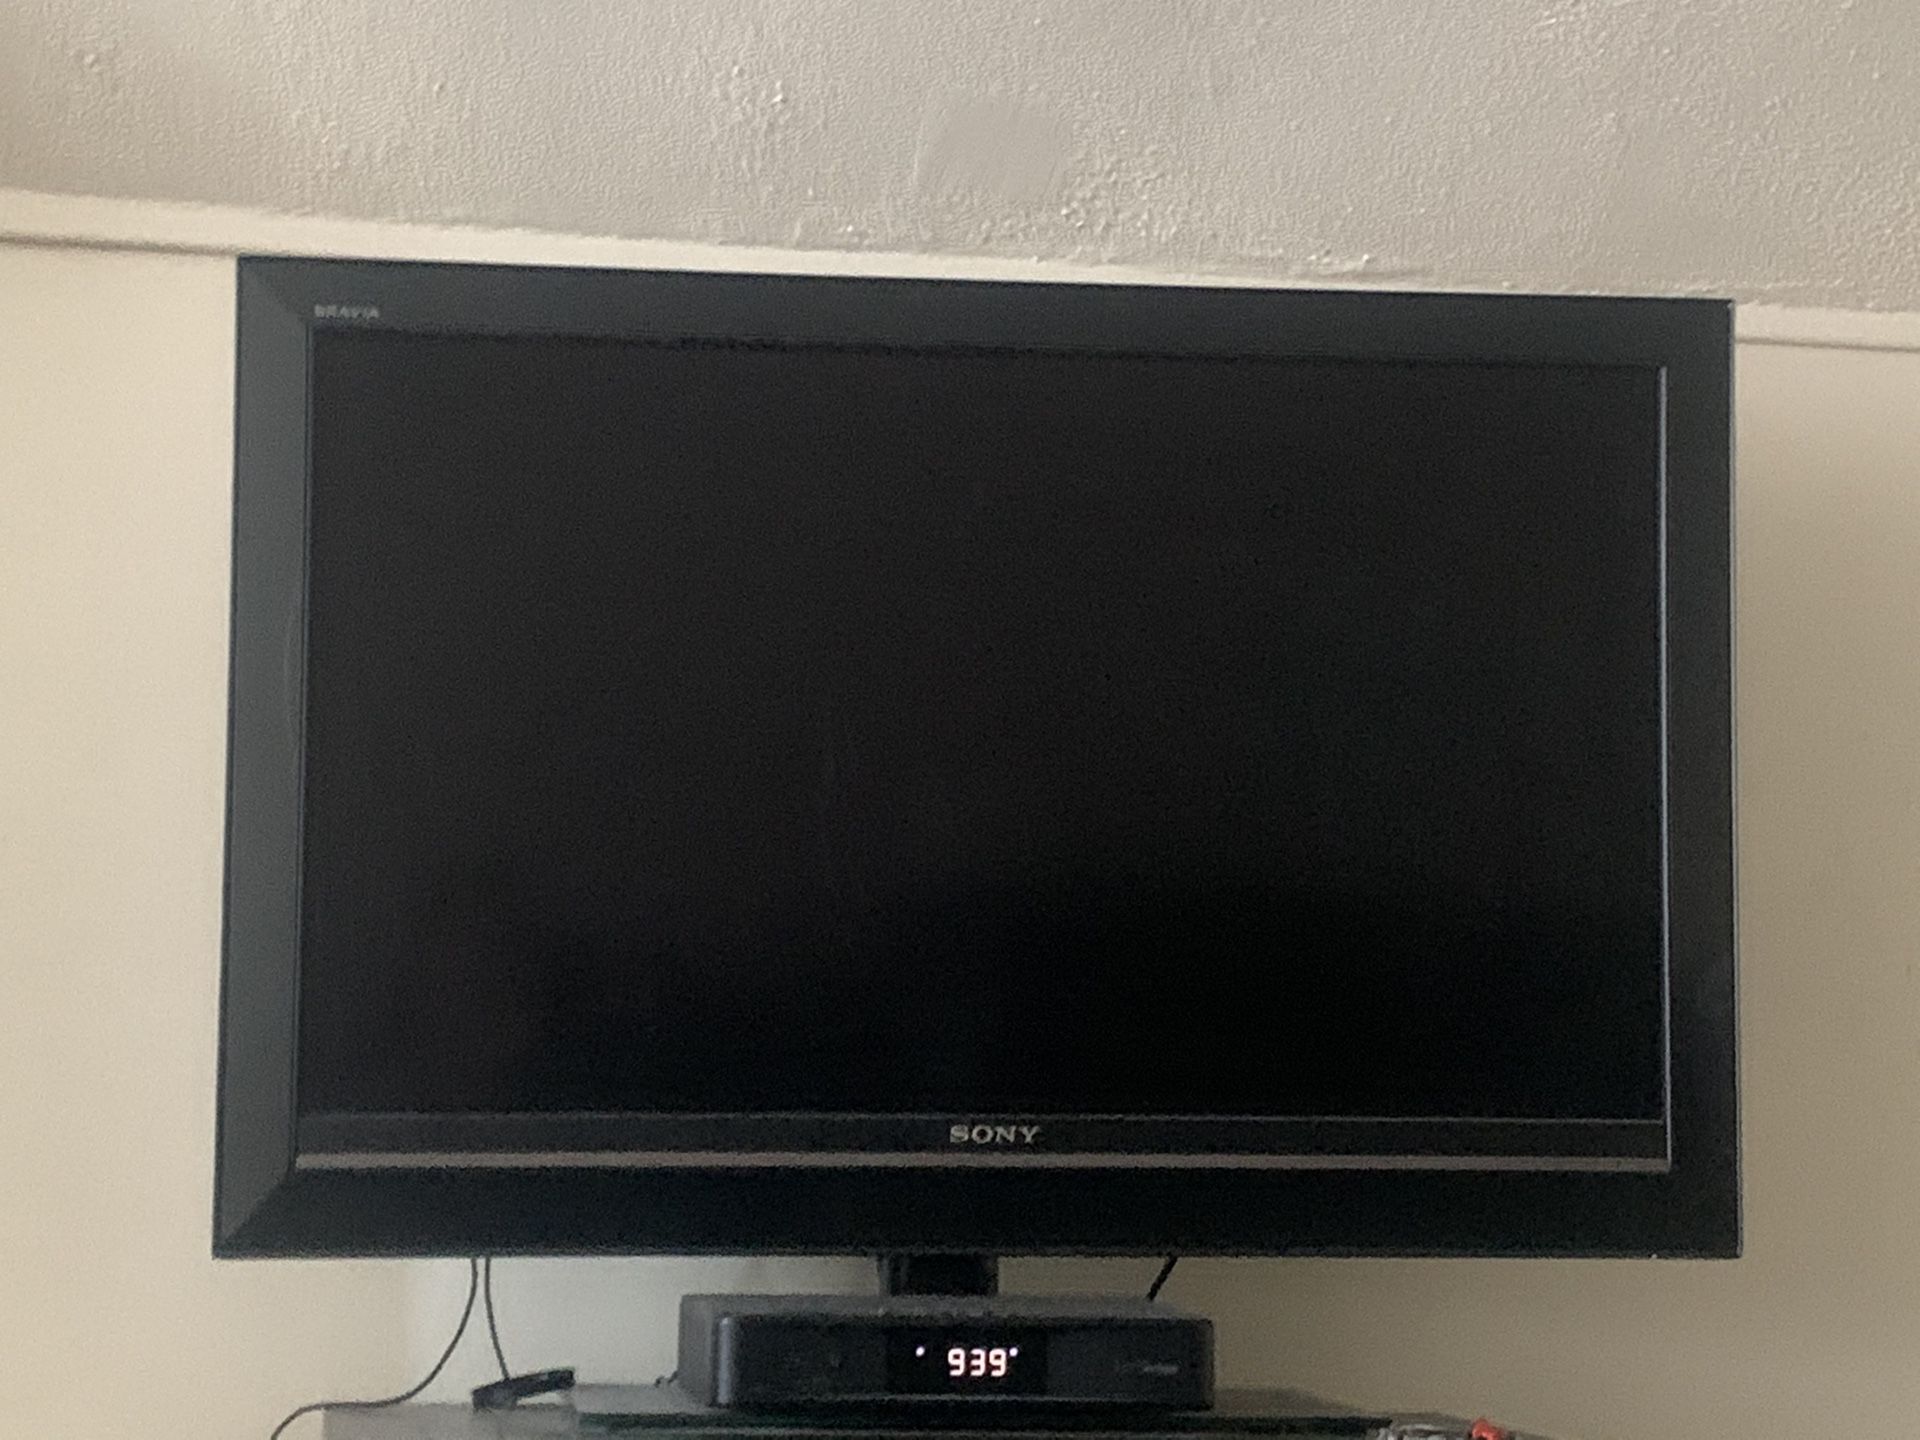 Sony TV flat screen 40” inch